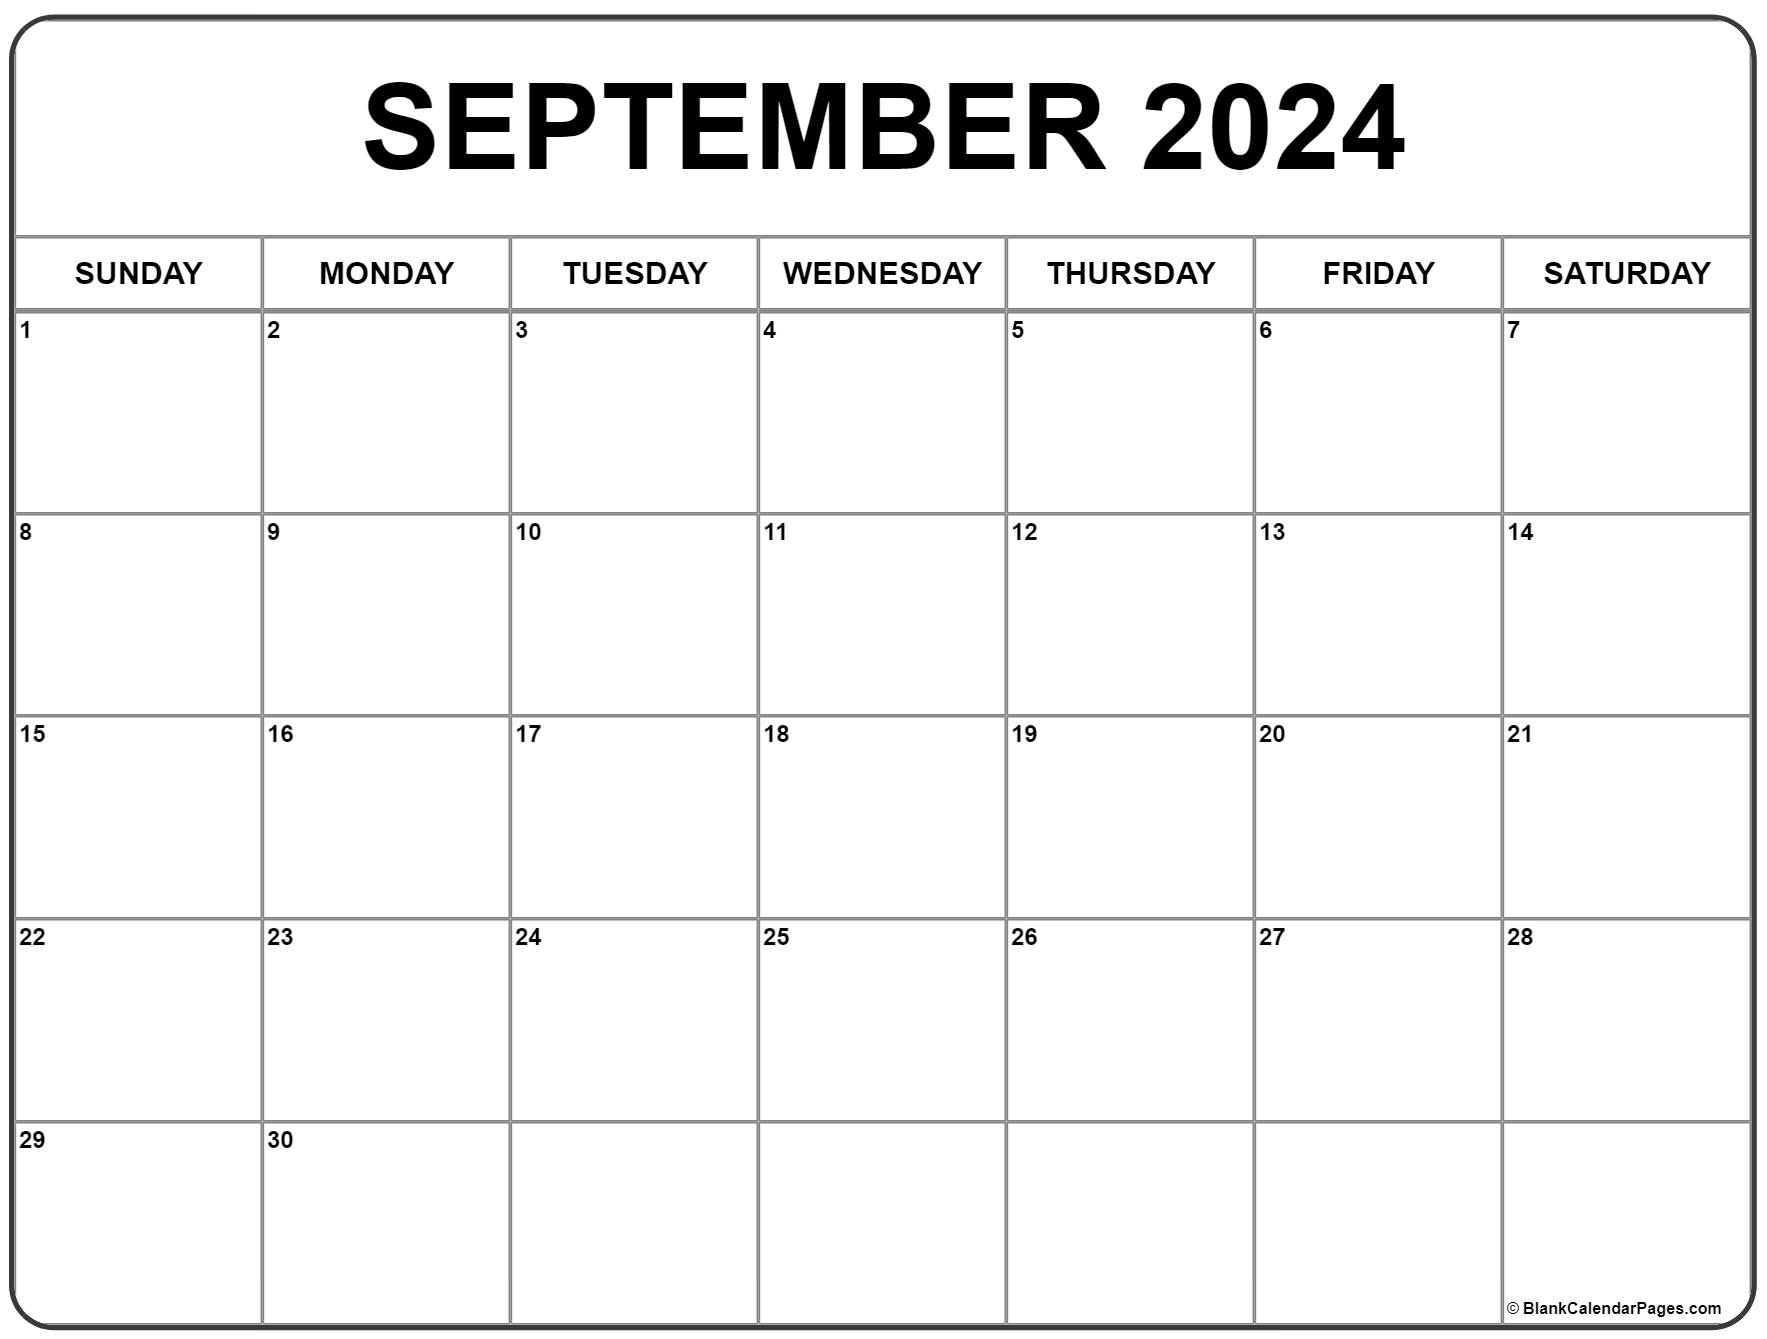 September 2022 Calendar Printable Free September 2022 Calendar | Free Printable Calendar Templates